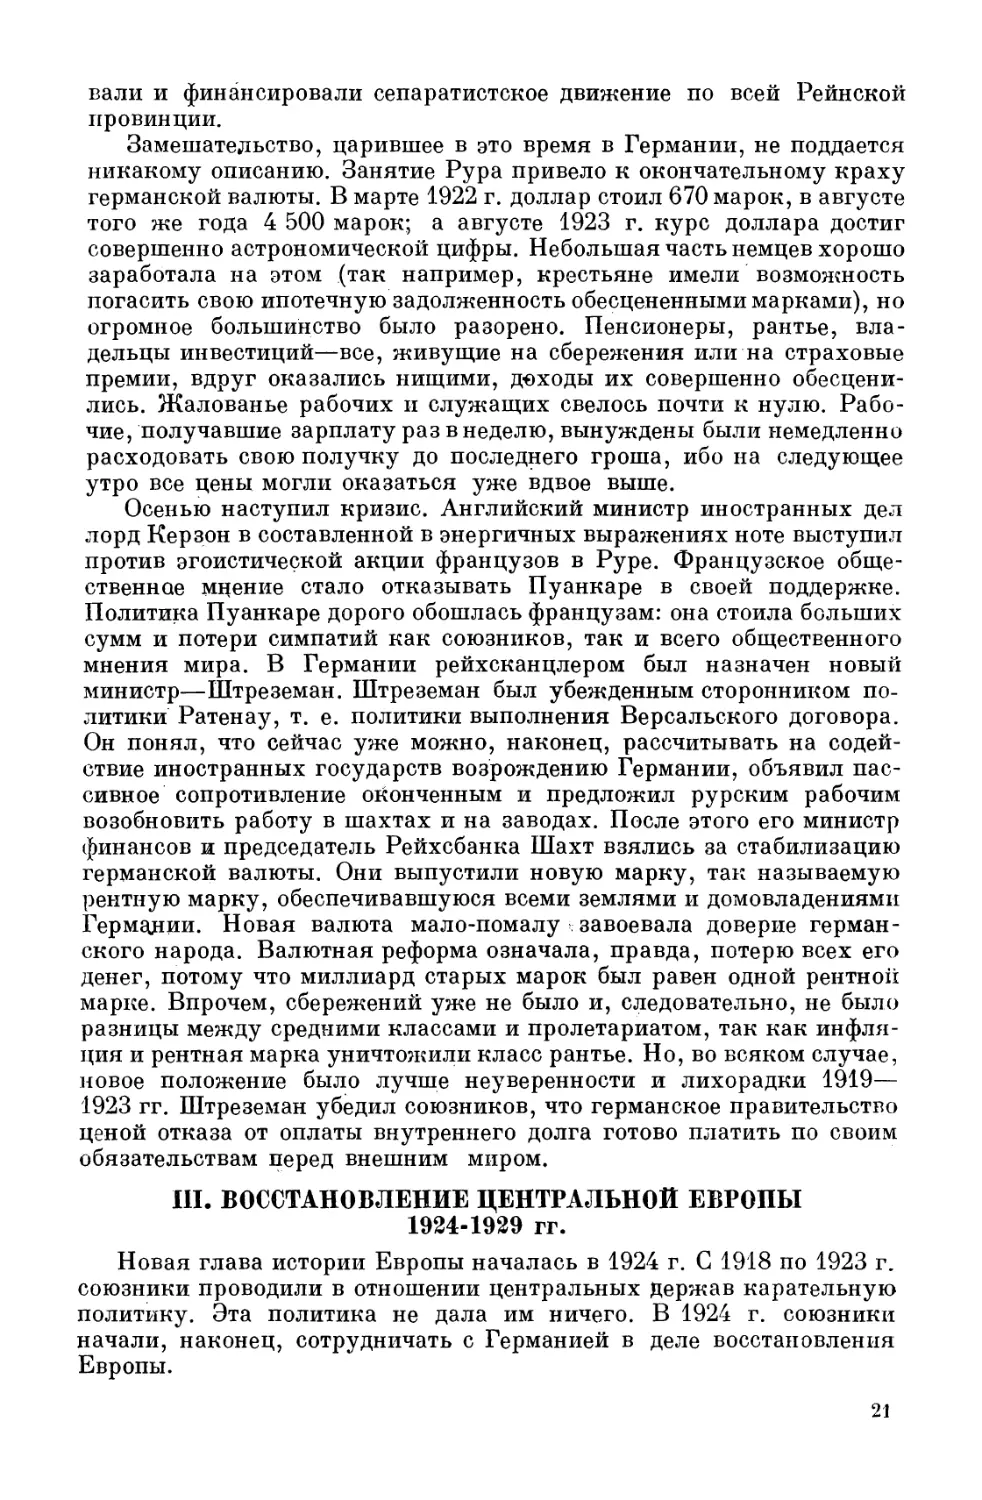 Восстановление Центральной Европы. 1924—1929 гг